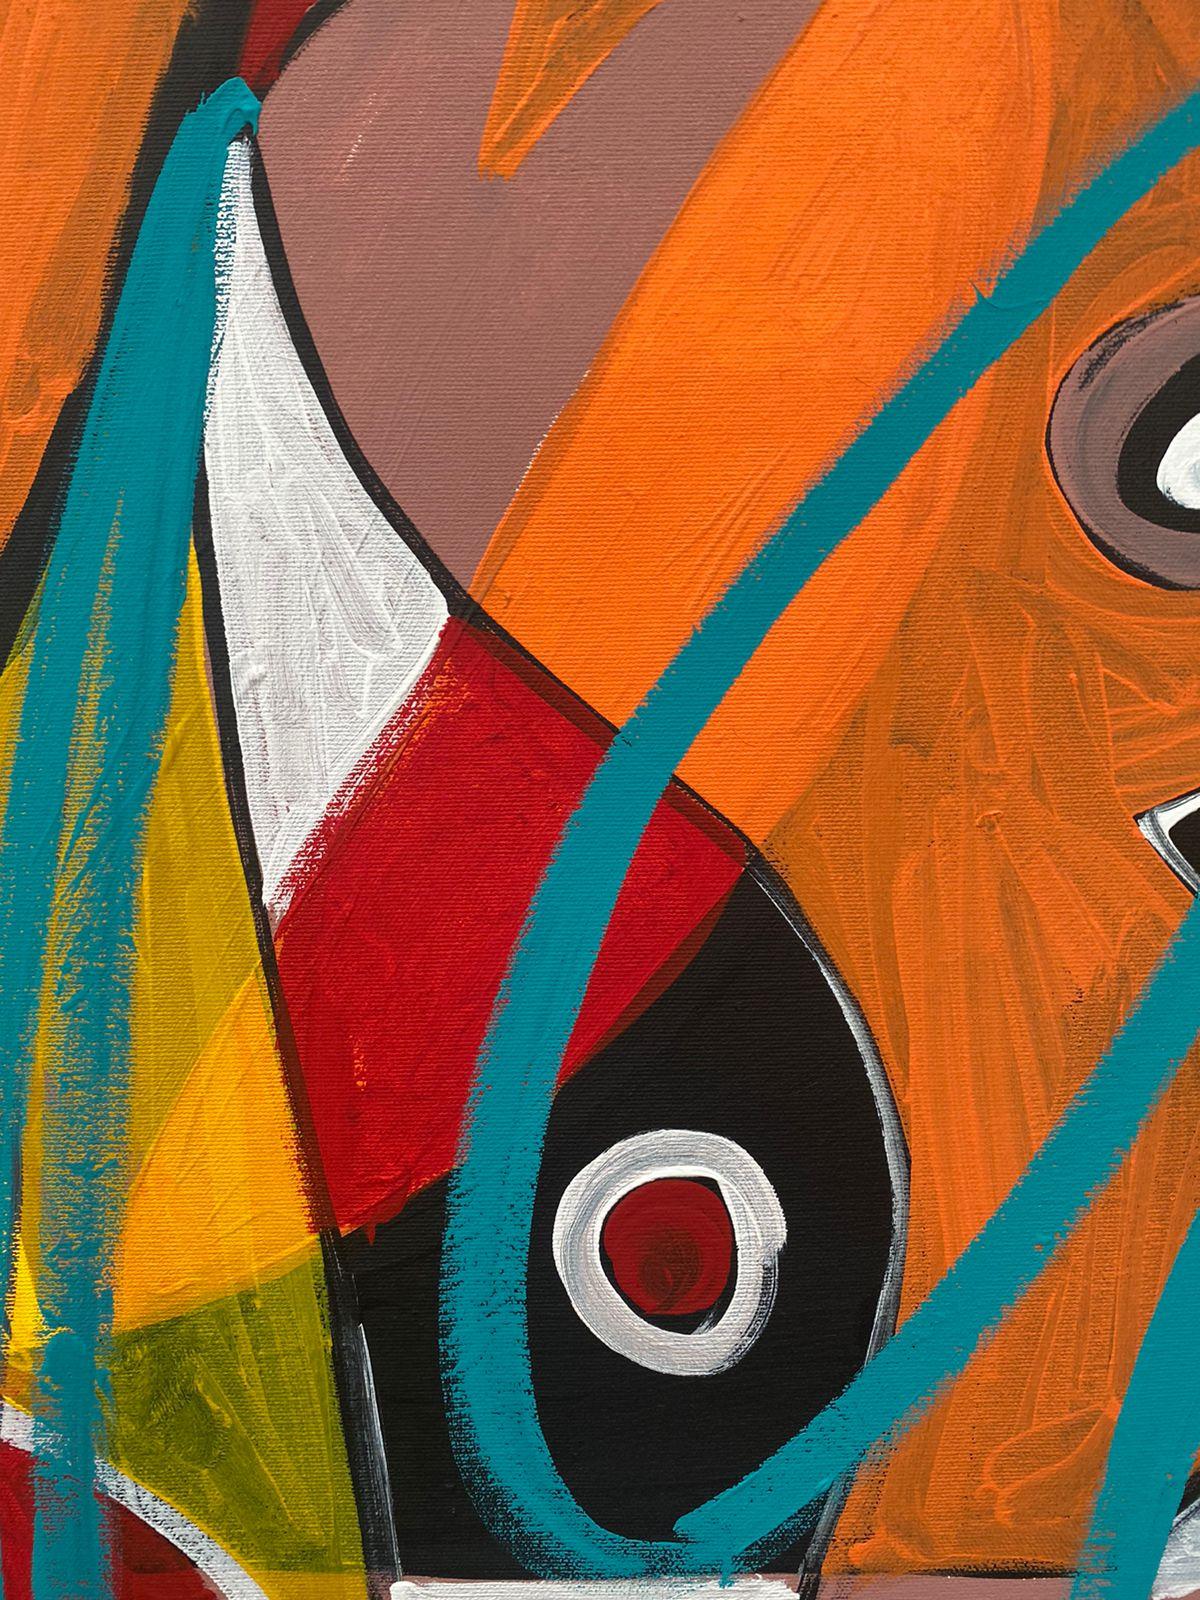 Composition, Art contemporain, Peinture abstraite, 21ème siècle - Orange Abstract Painting par Enrique Pichardo